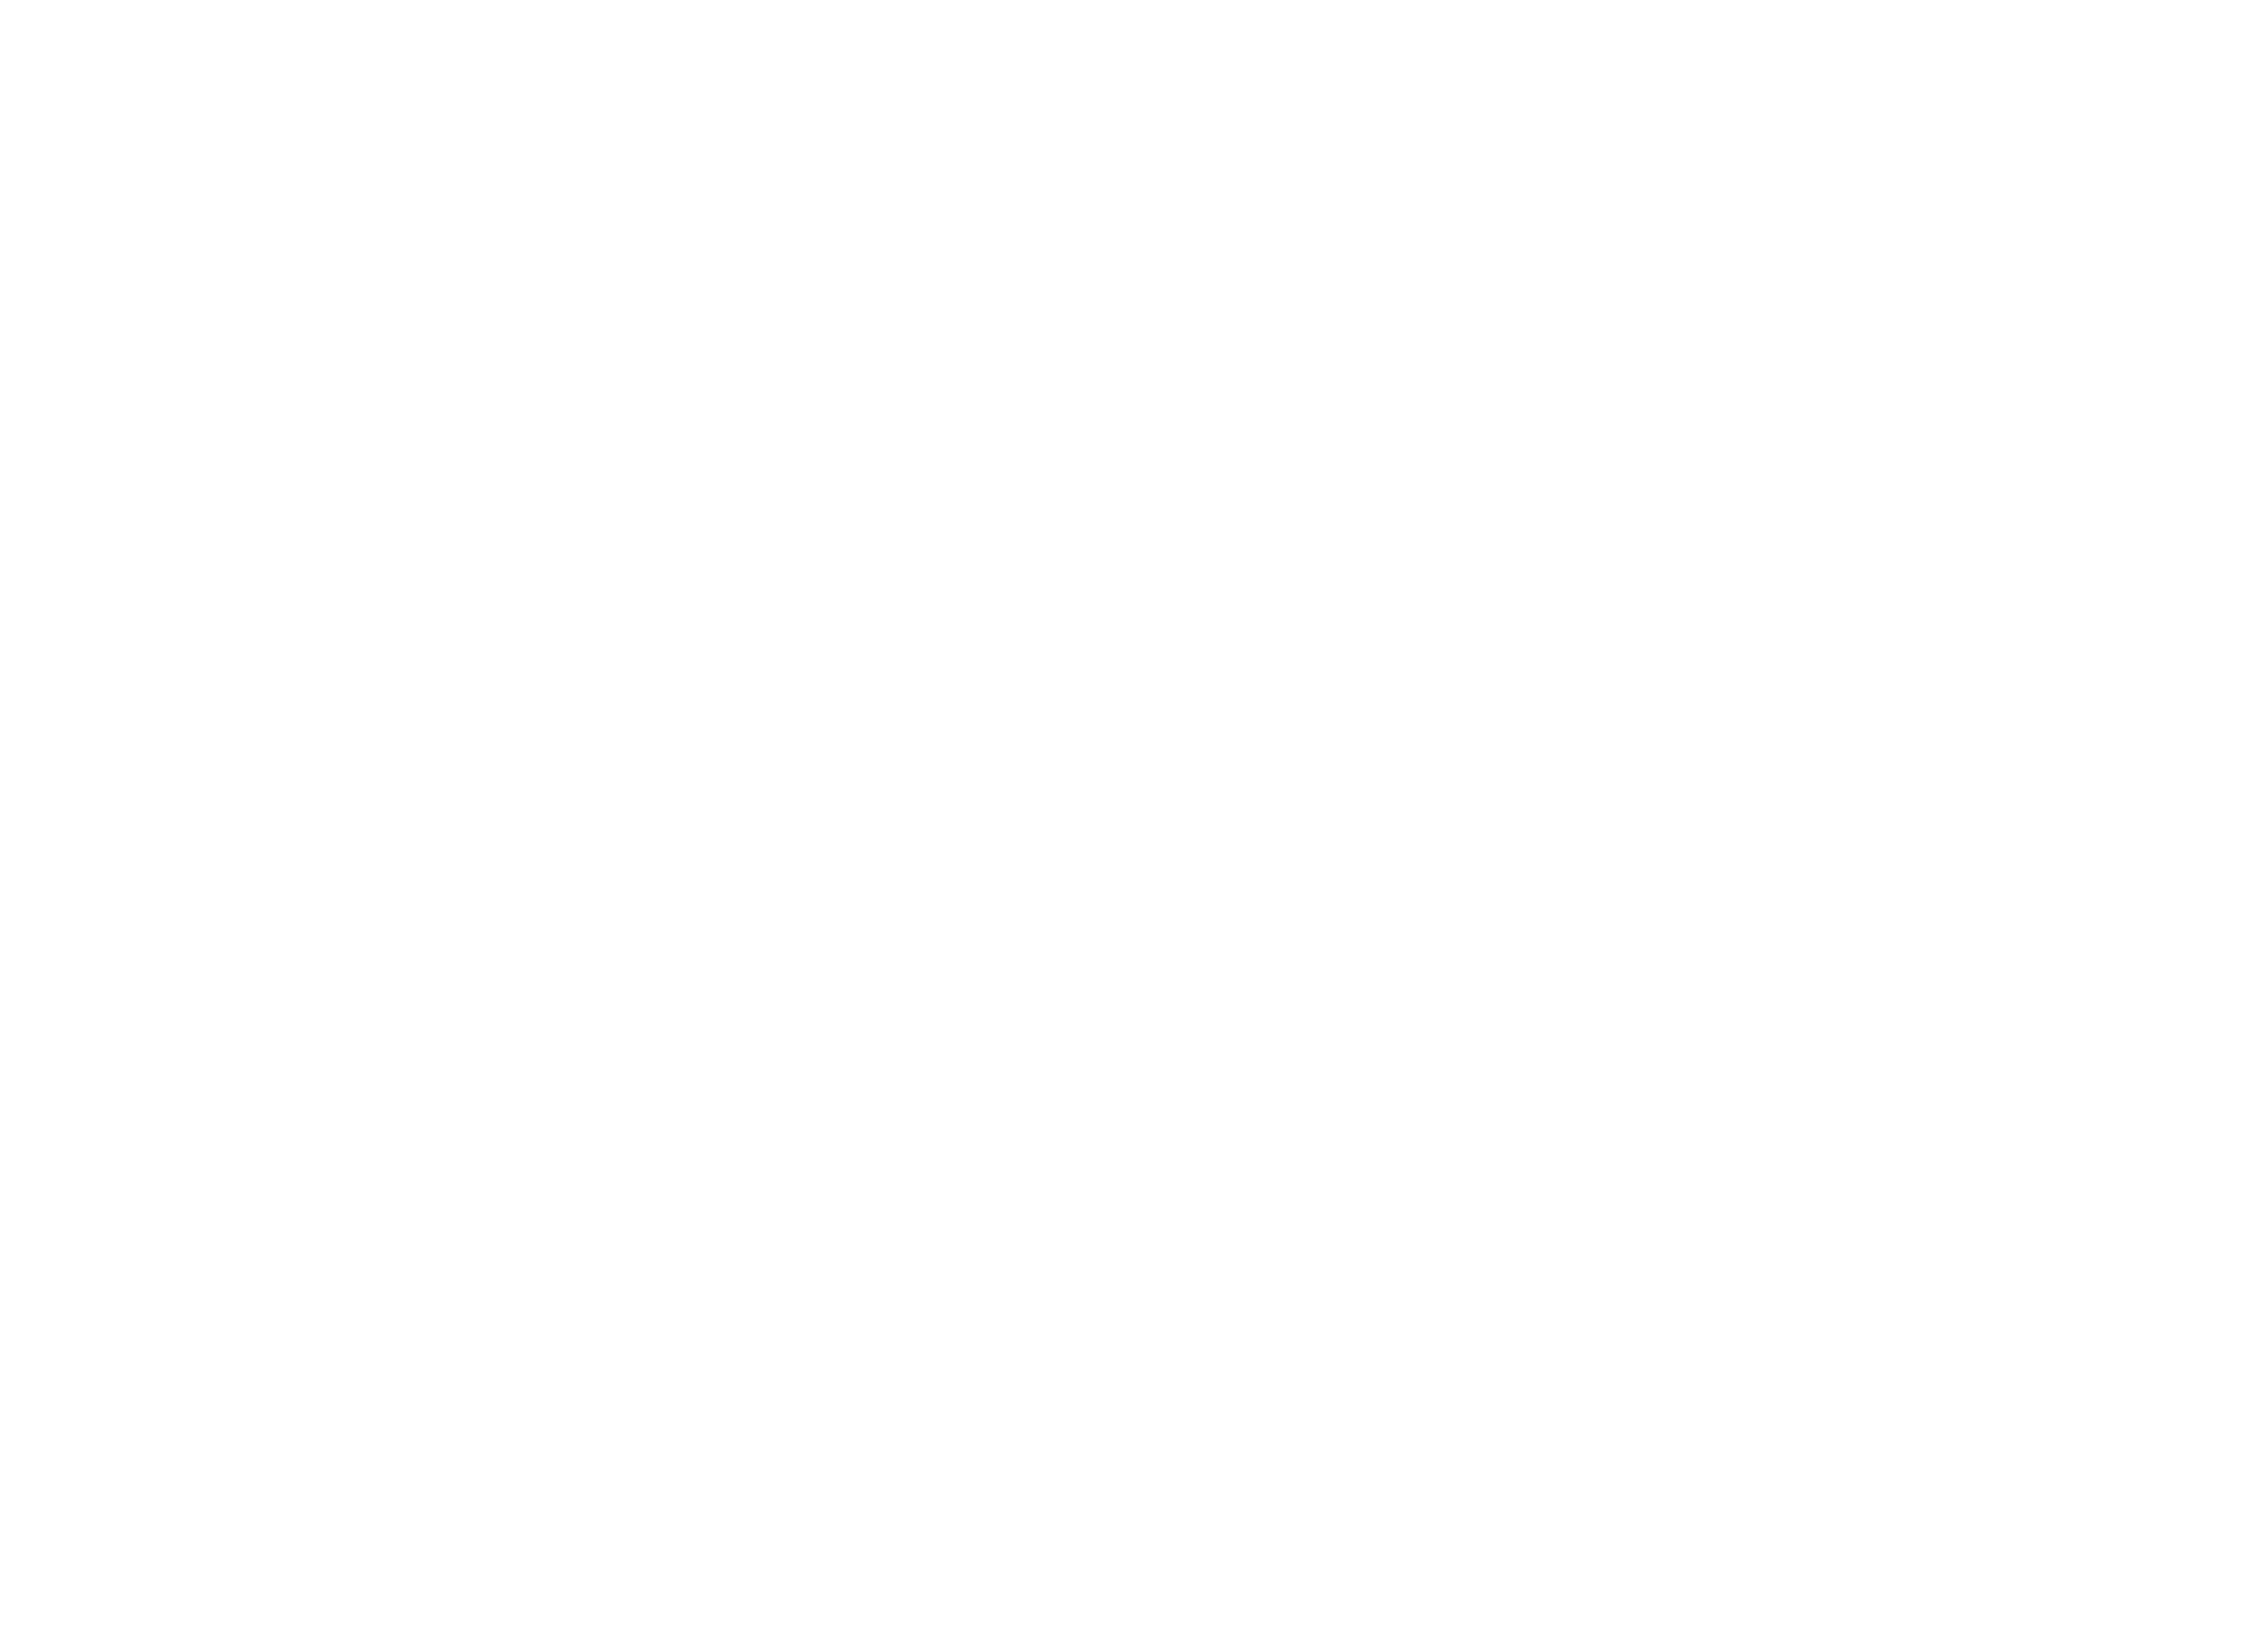 logo ABC